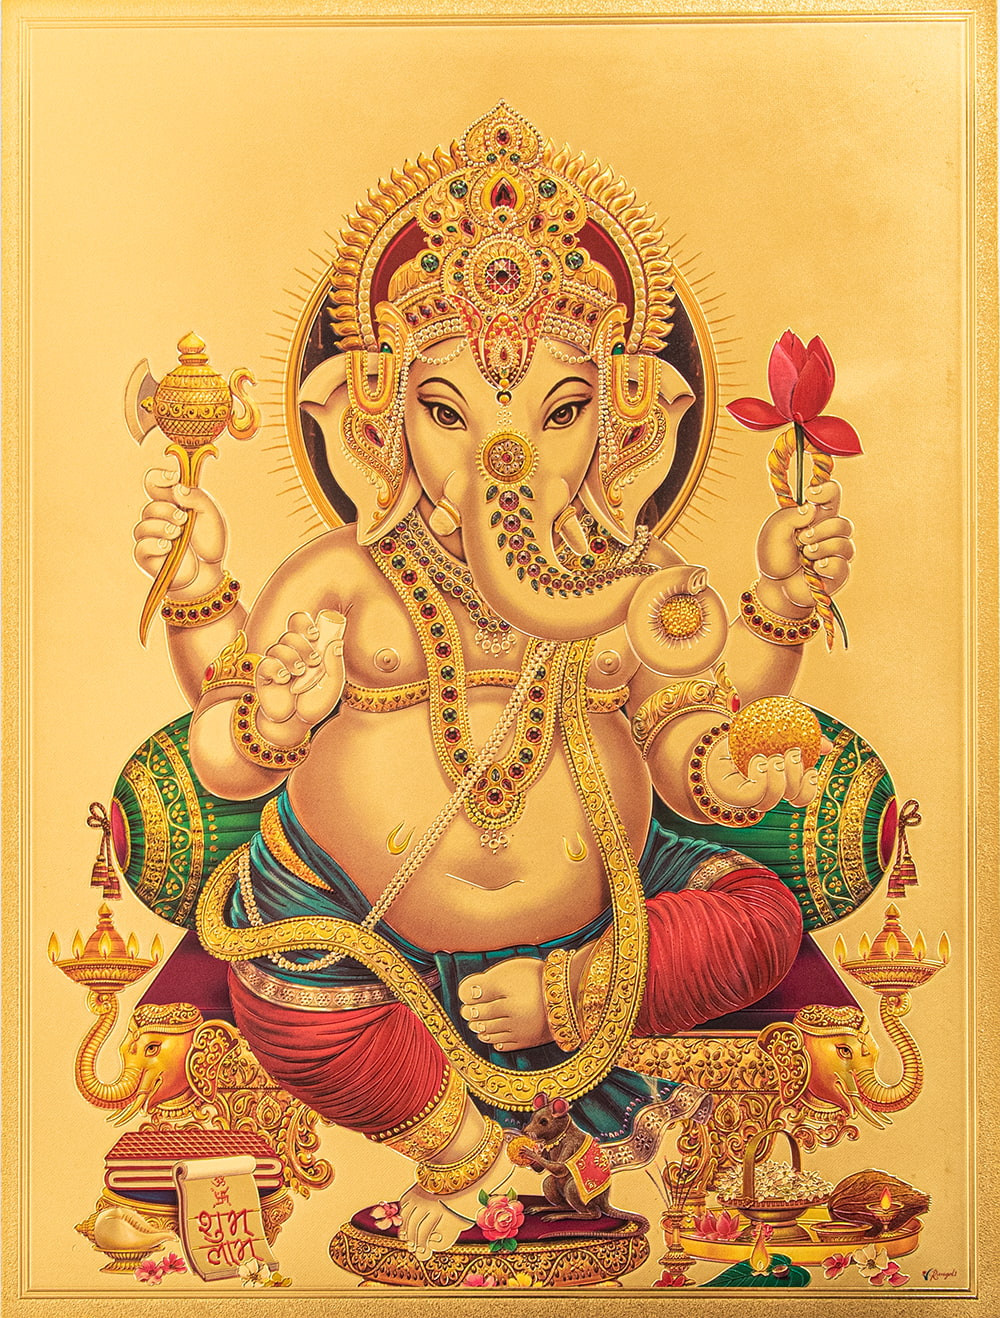 〔約40cm×約30cm〕インドのヒンドゥー神様ゴールドポスター - ガネーシャ 学問と商売の神様1枚目の説明写真です